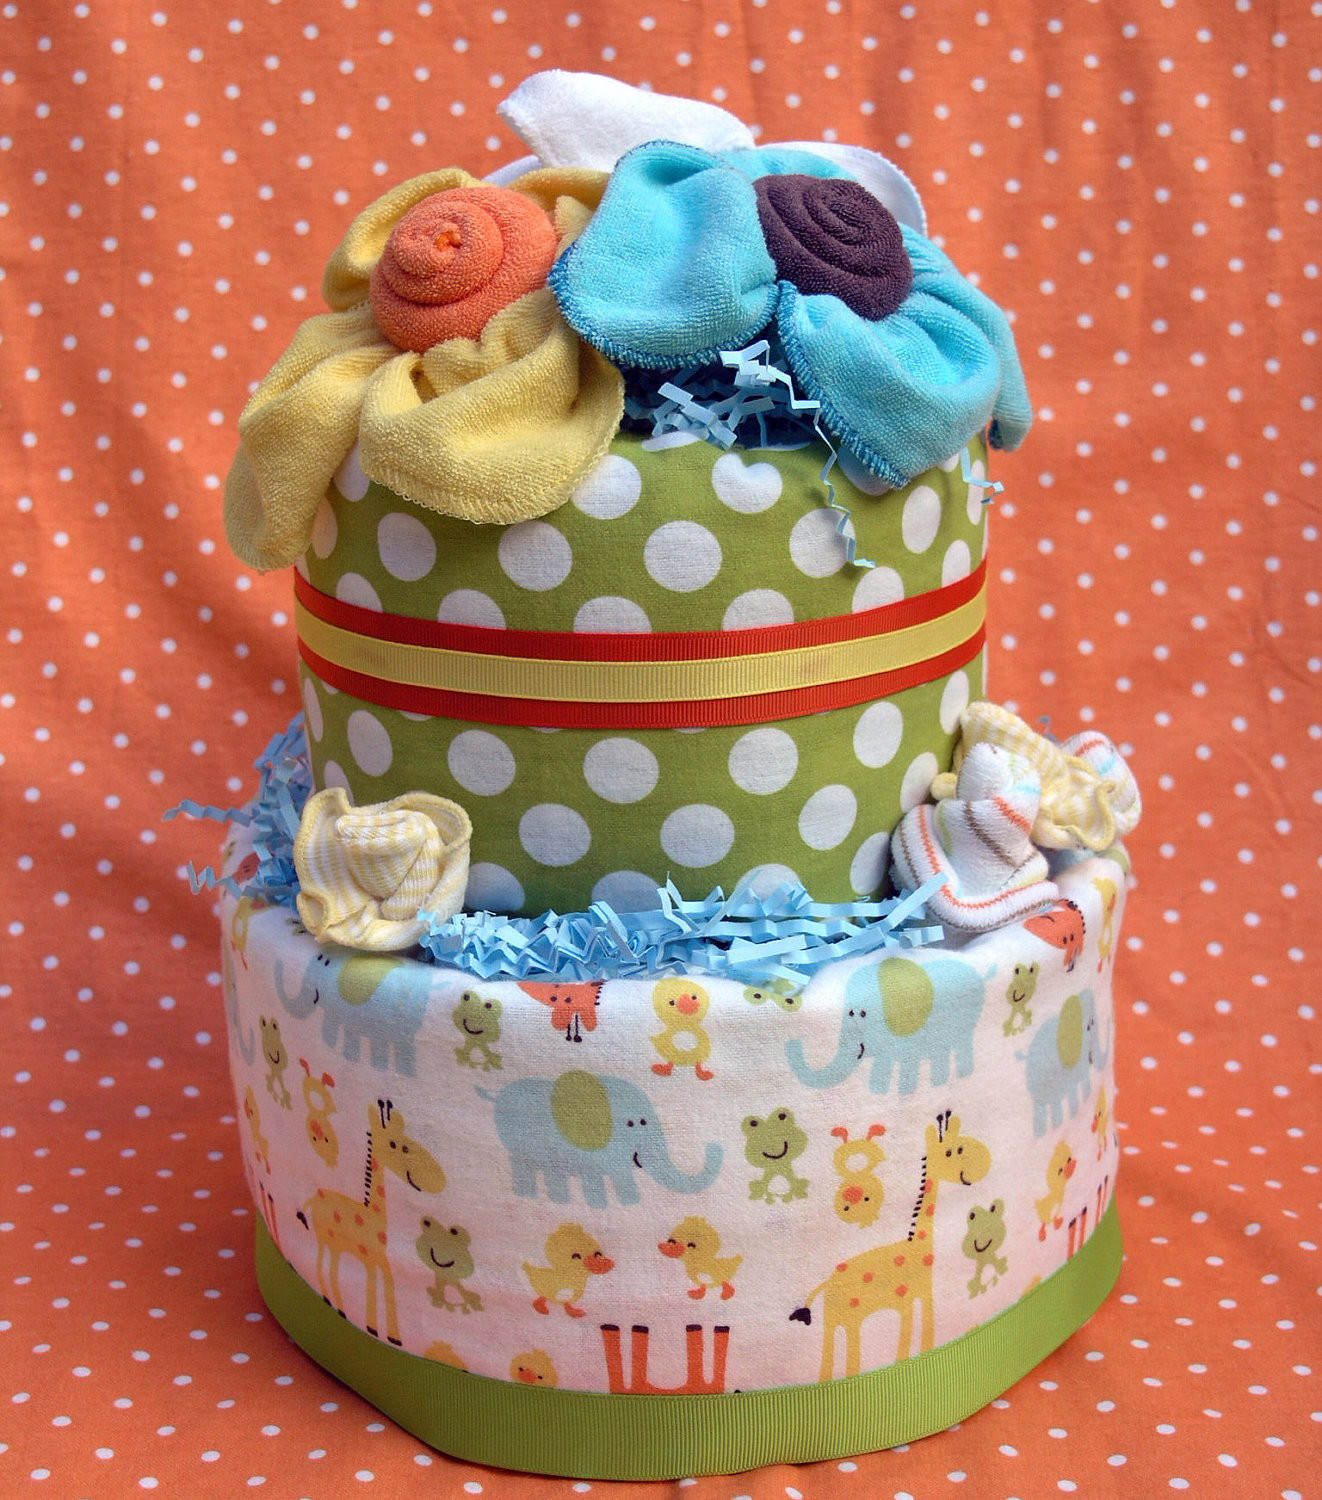 DIY Baby Diaper Cake
 DIY Diaper Cakes For Baby Showers